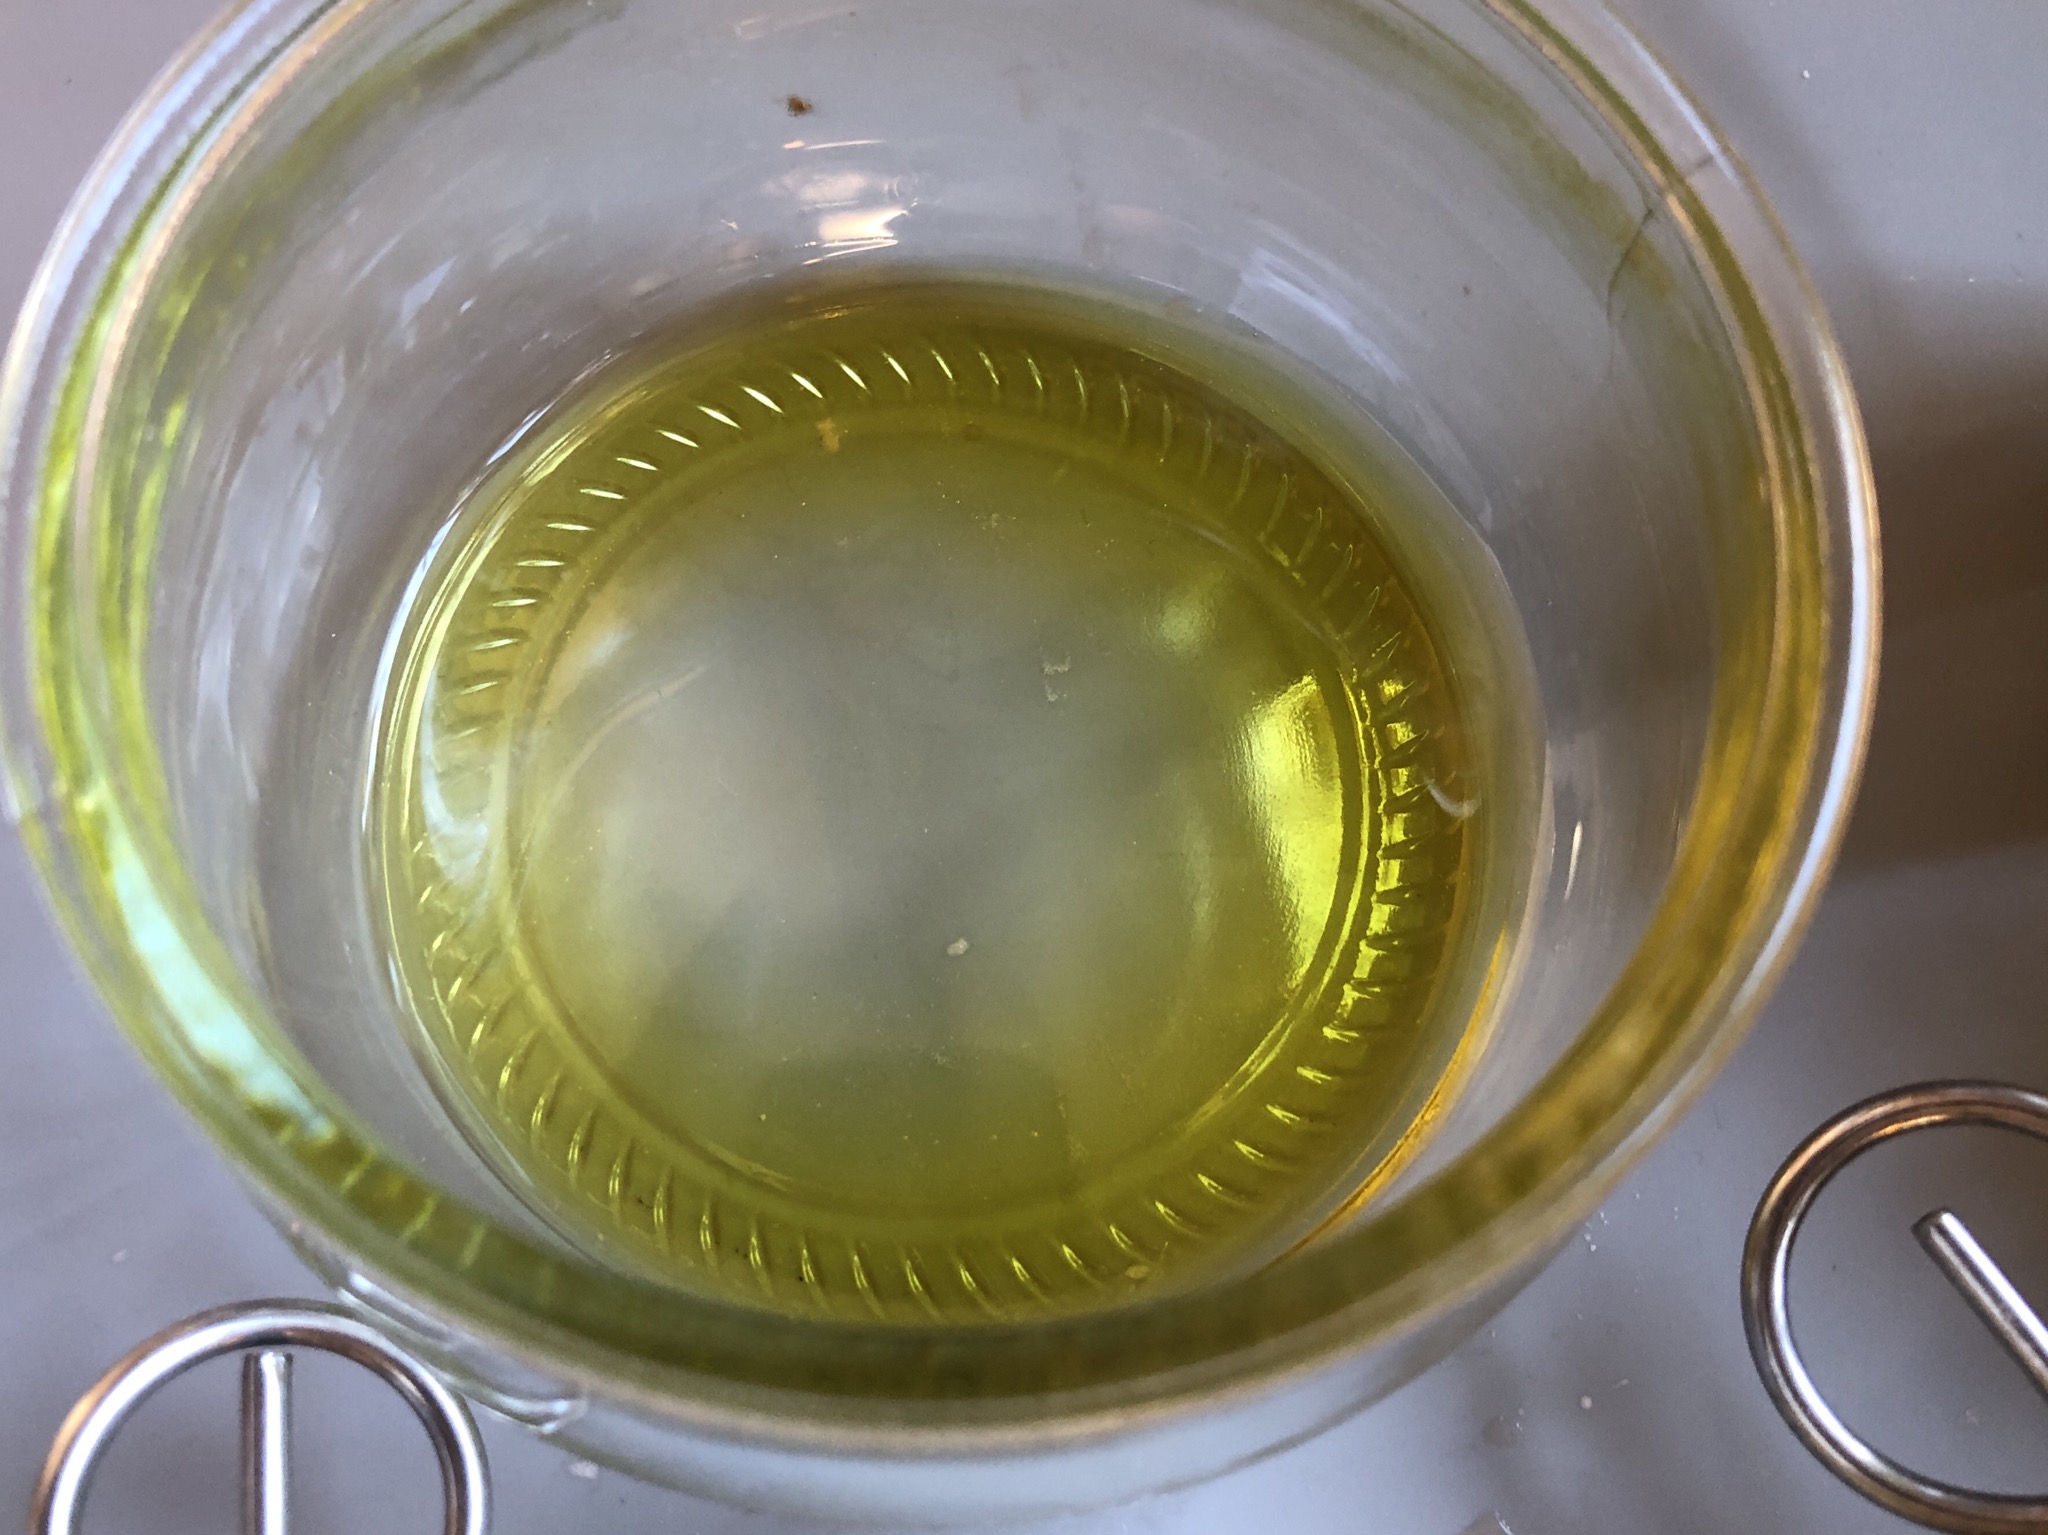 Bild zum Schritt 9 für das Bastel- und DIY-Abenteuer für Kinder: 'Zwei Esslöffel Olivenöl in eine Schale geben .'